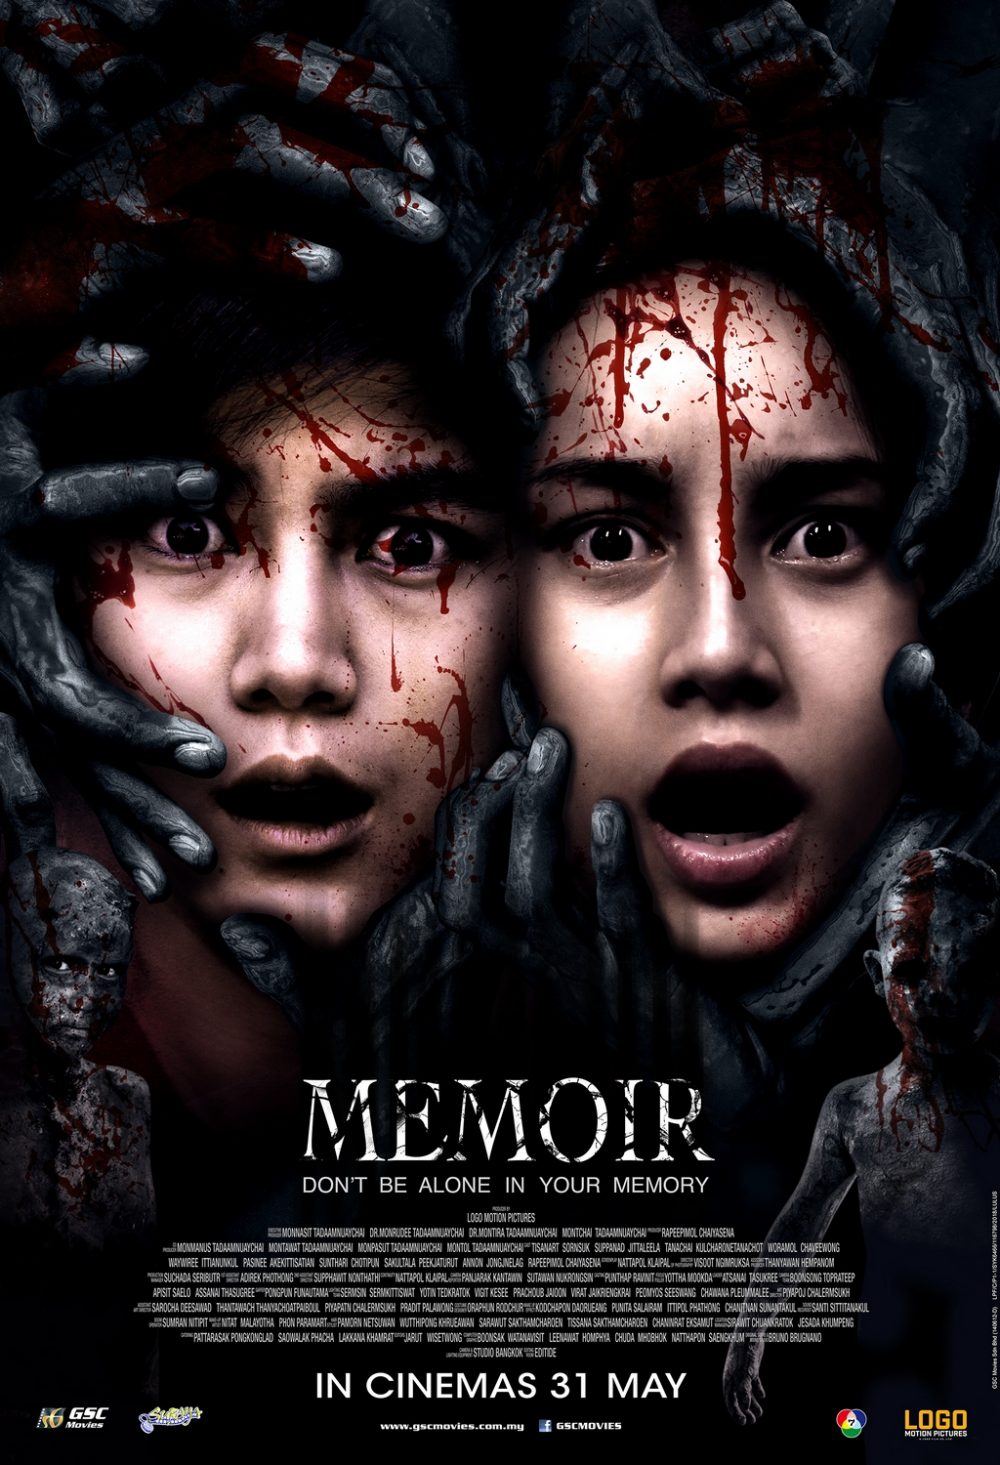 Dead Memory - Memoir (2018)